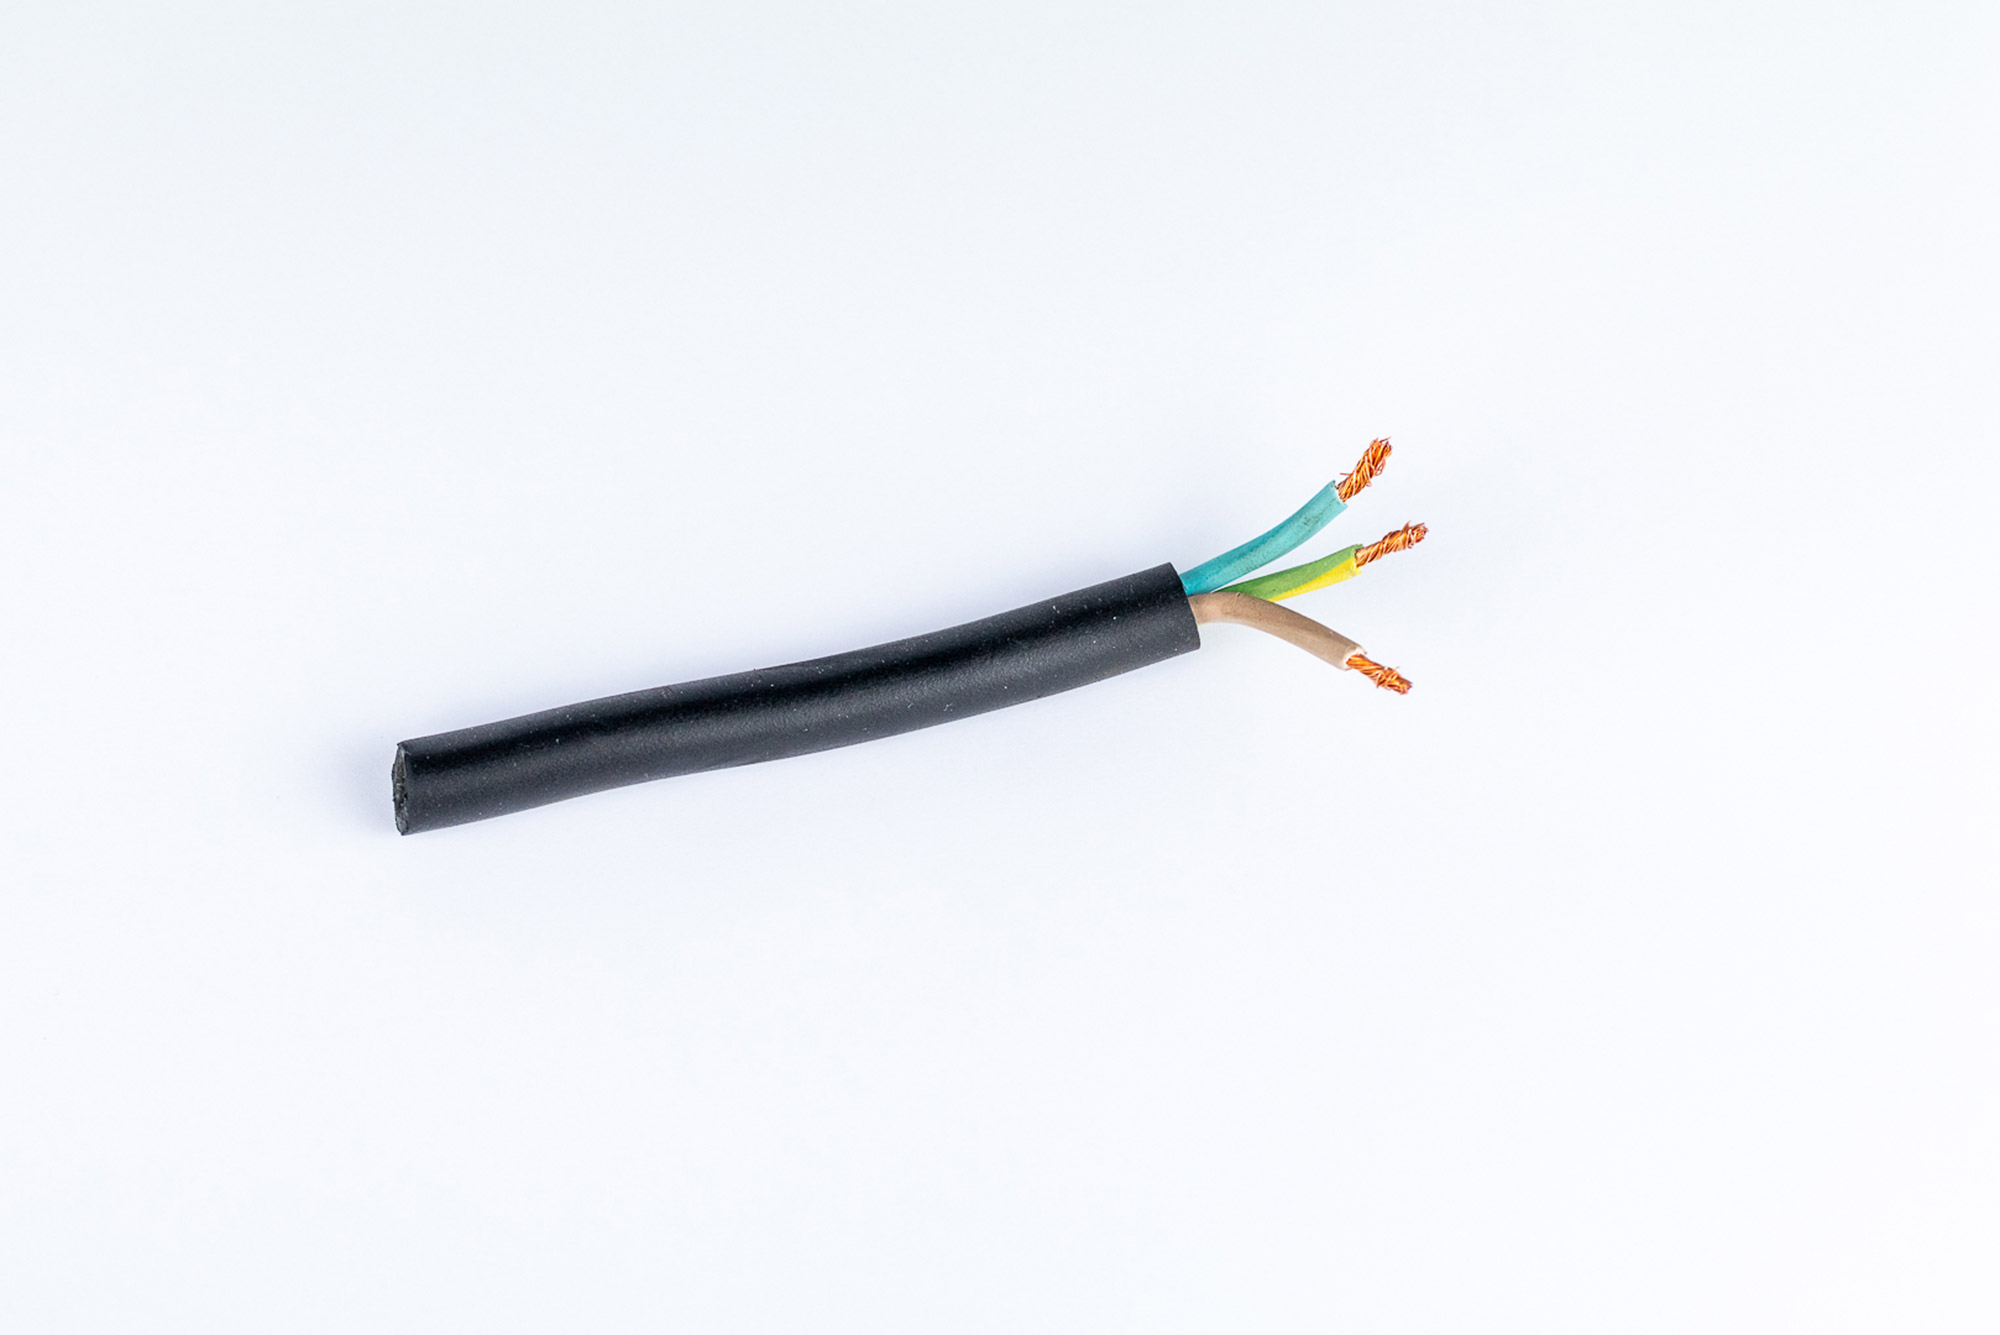 Câble électrique souple H07RNF 3G 1.5mm2 - Vente au mètre linéaire